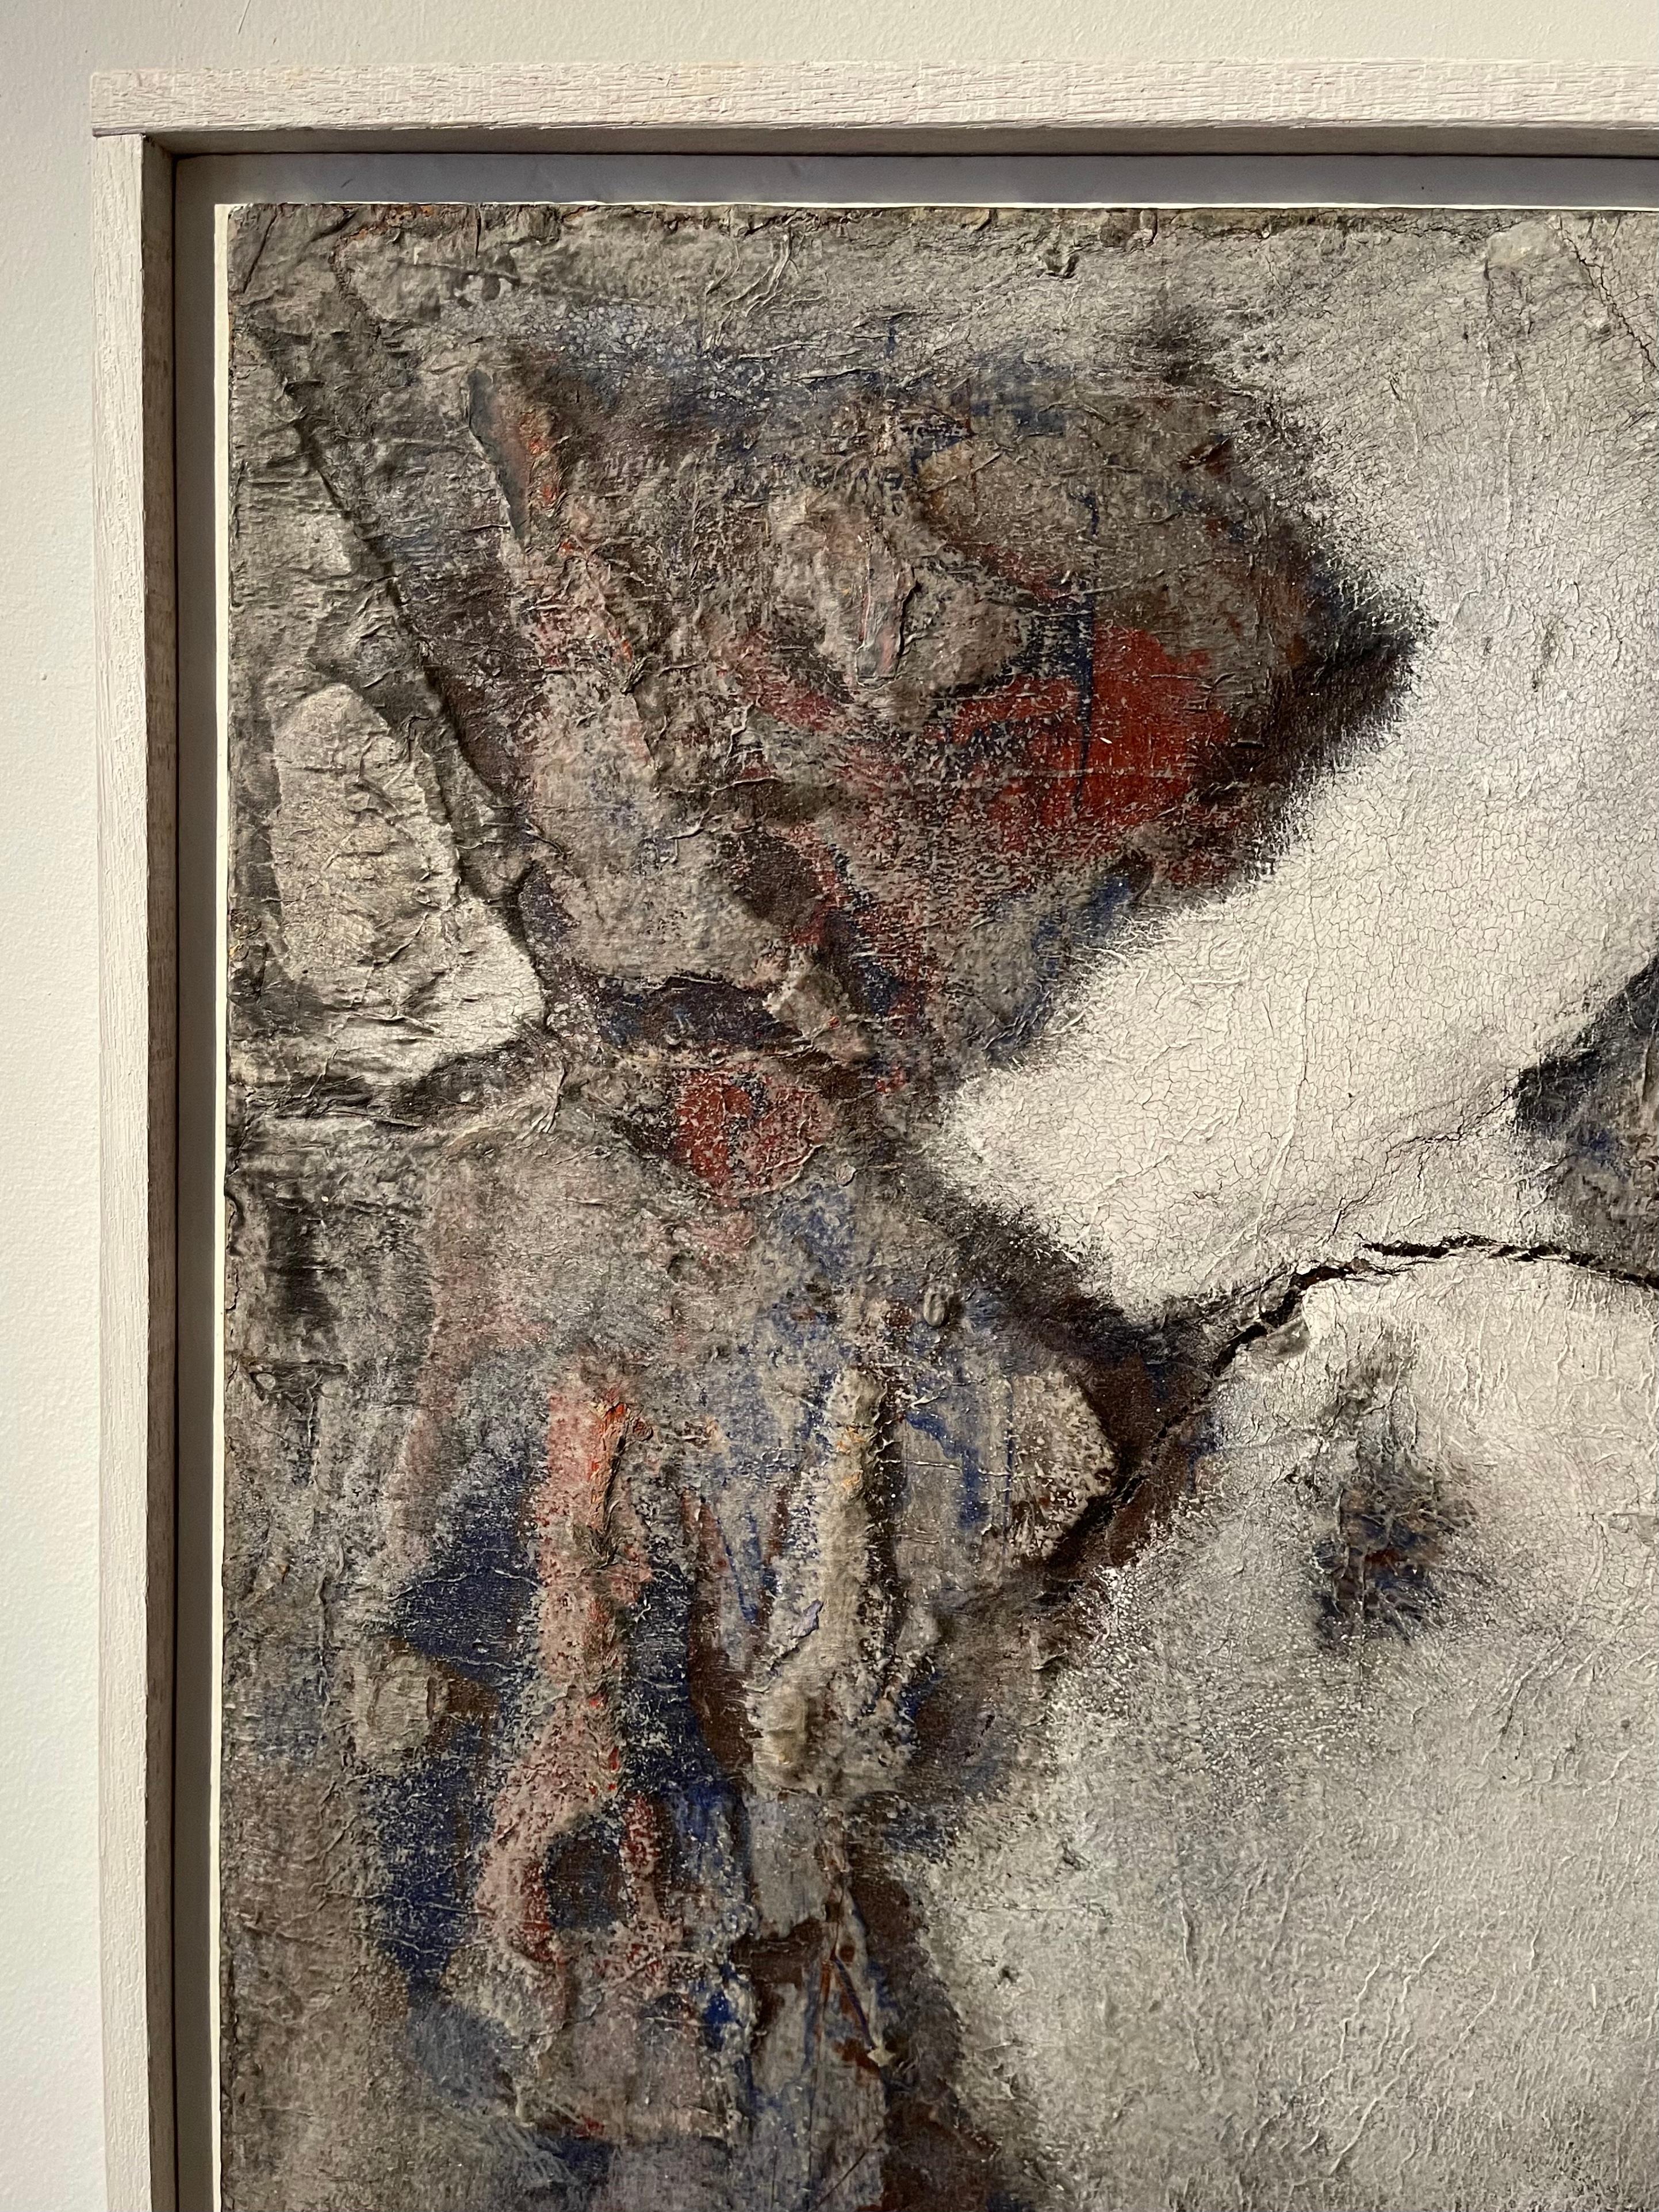 Wir stellen ein fesselndes Gemälde der Nachkriegsmoderne des deutschen Künstlers Ferdinand Spindel vor. In einer atemberaubenden abstrakten Komposition zeigt dieses Stück ein harmonisches Zusammenspiel von roten und blauen Tönen, die sich subtil von